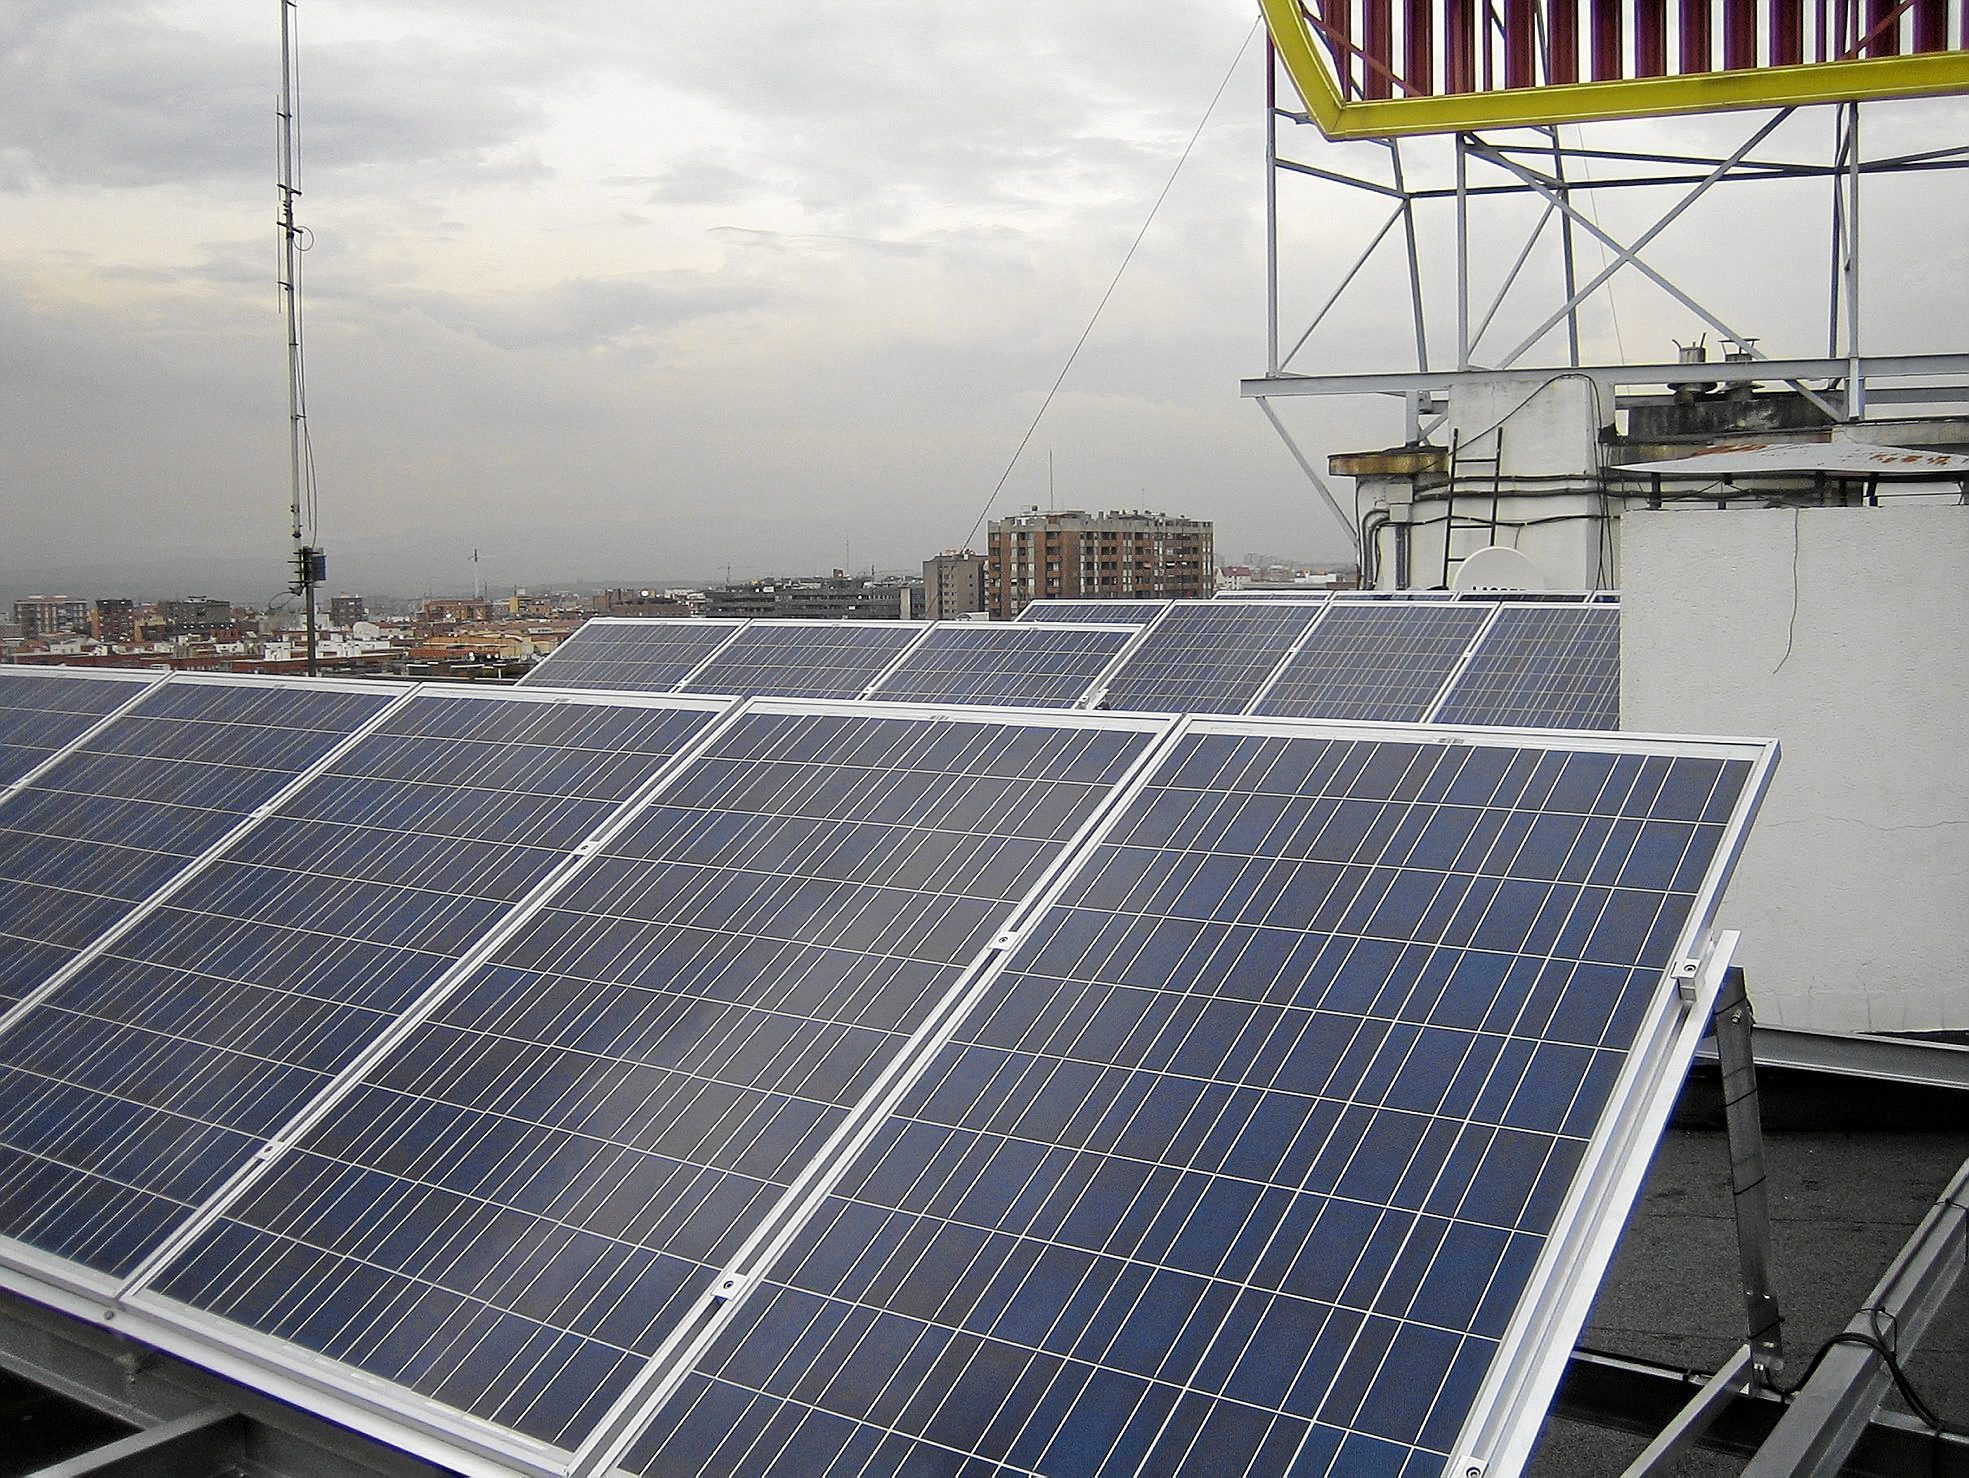 Placas fotovoltaicas en la cubierta de un edificio.